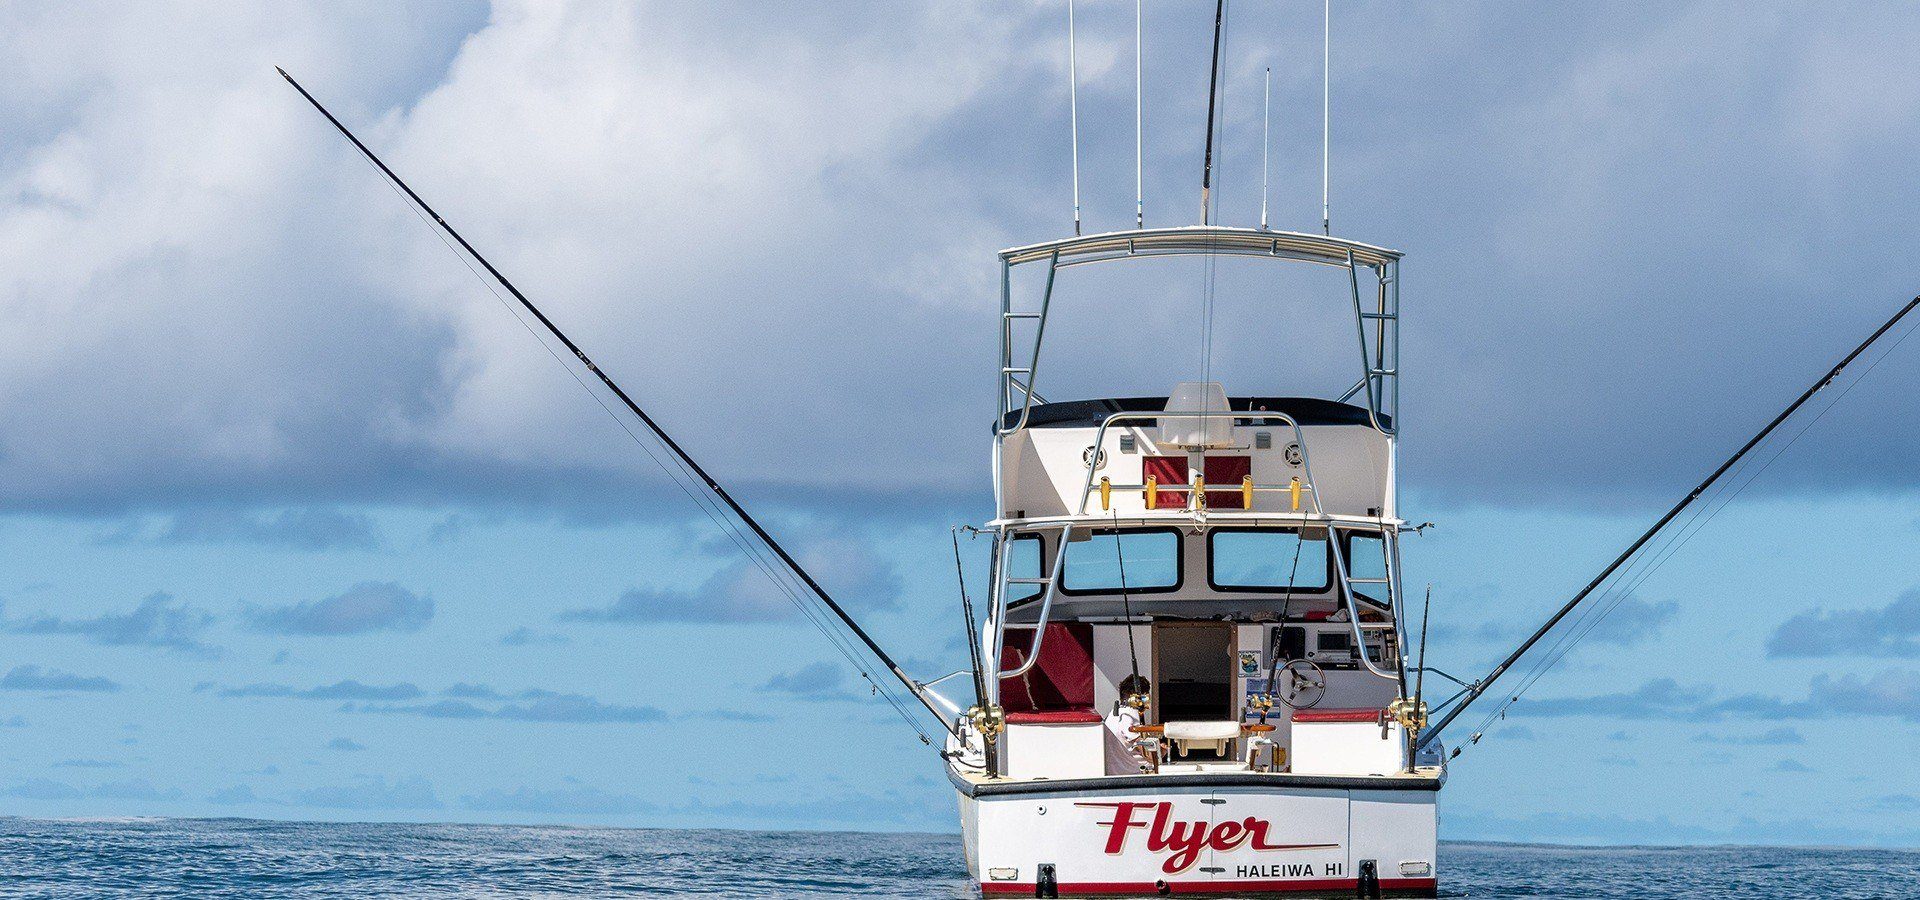 Oahu Fishing Charters | North Shore Fishing Charters Oahu Hawaii | Flyer Sportfishing